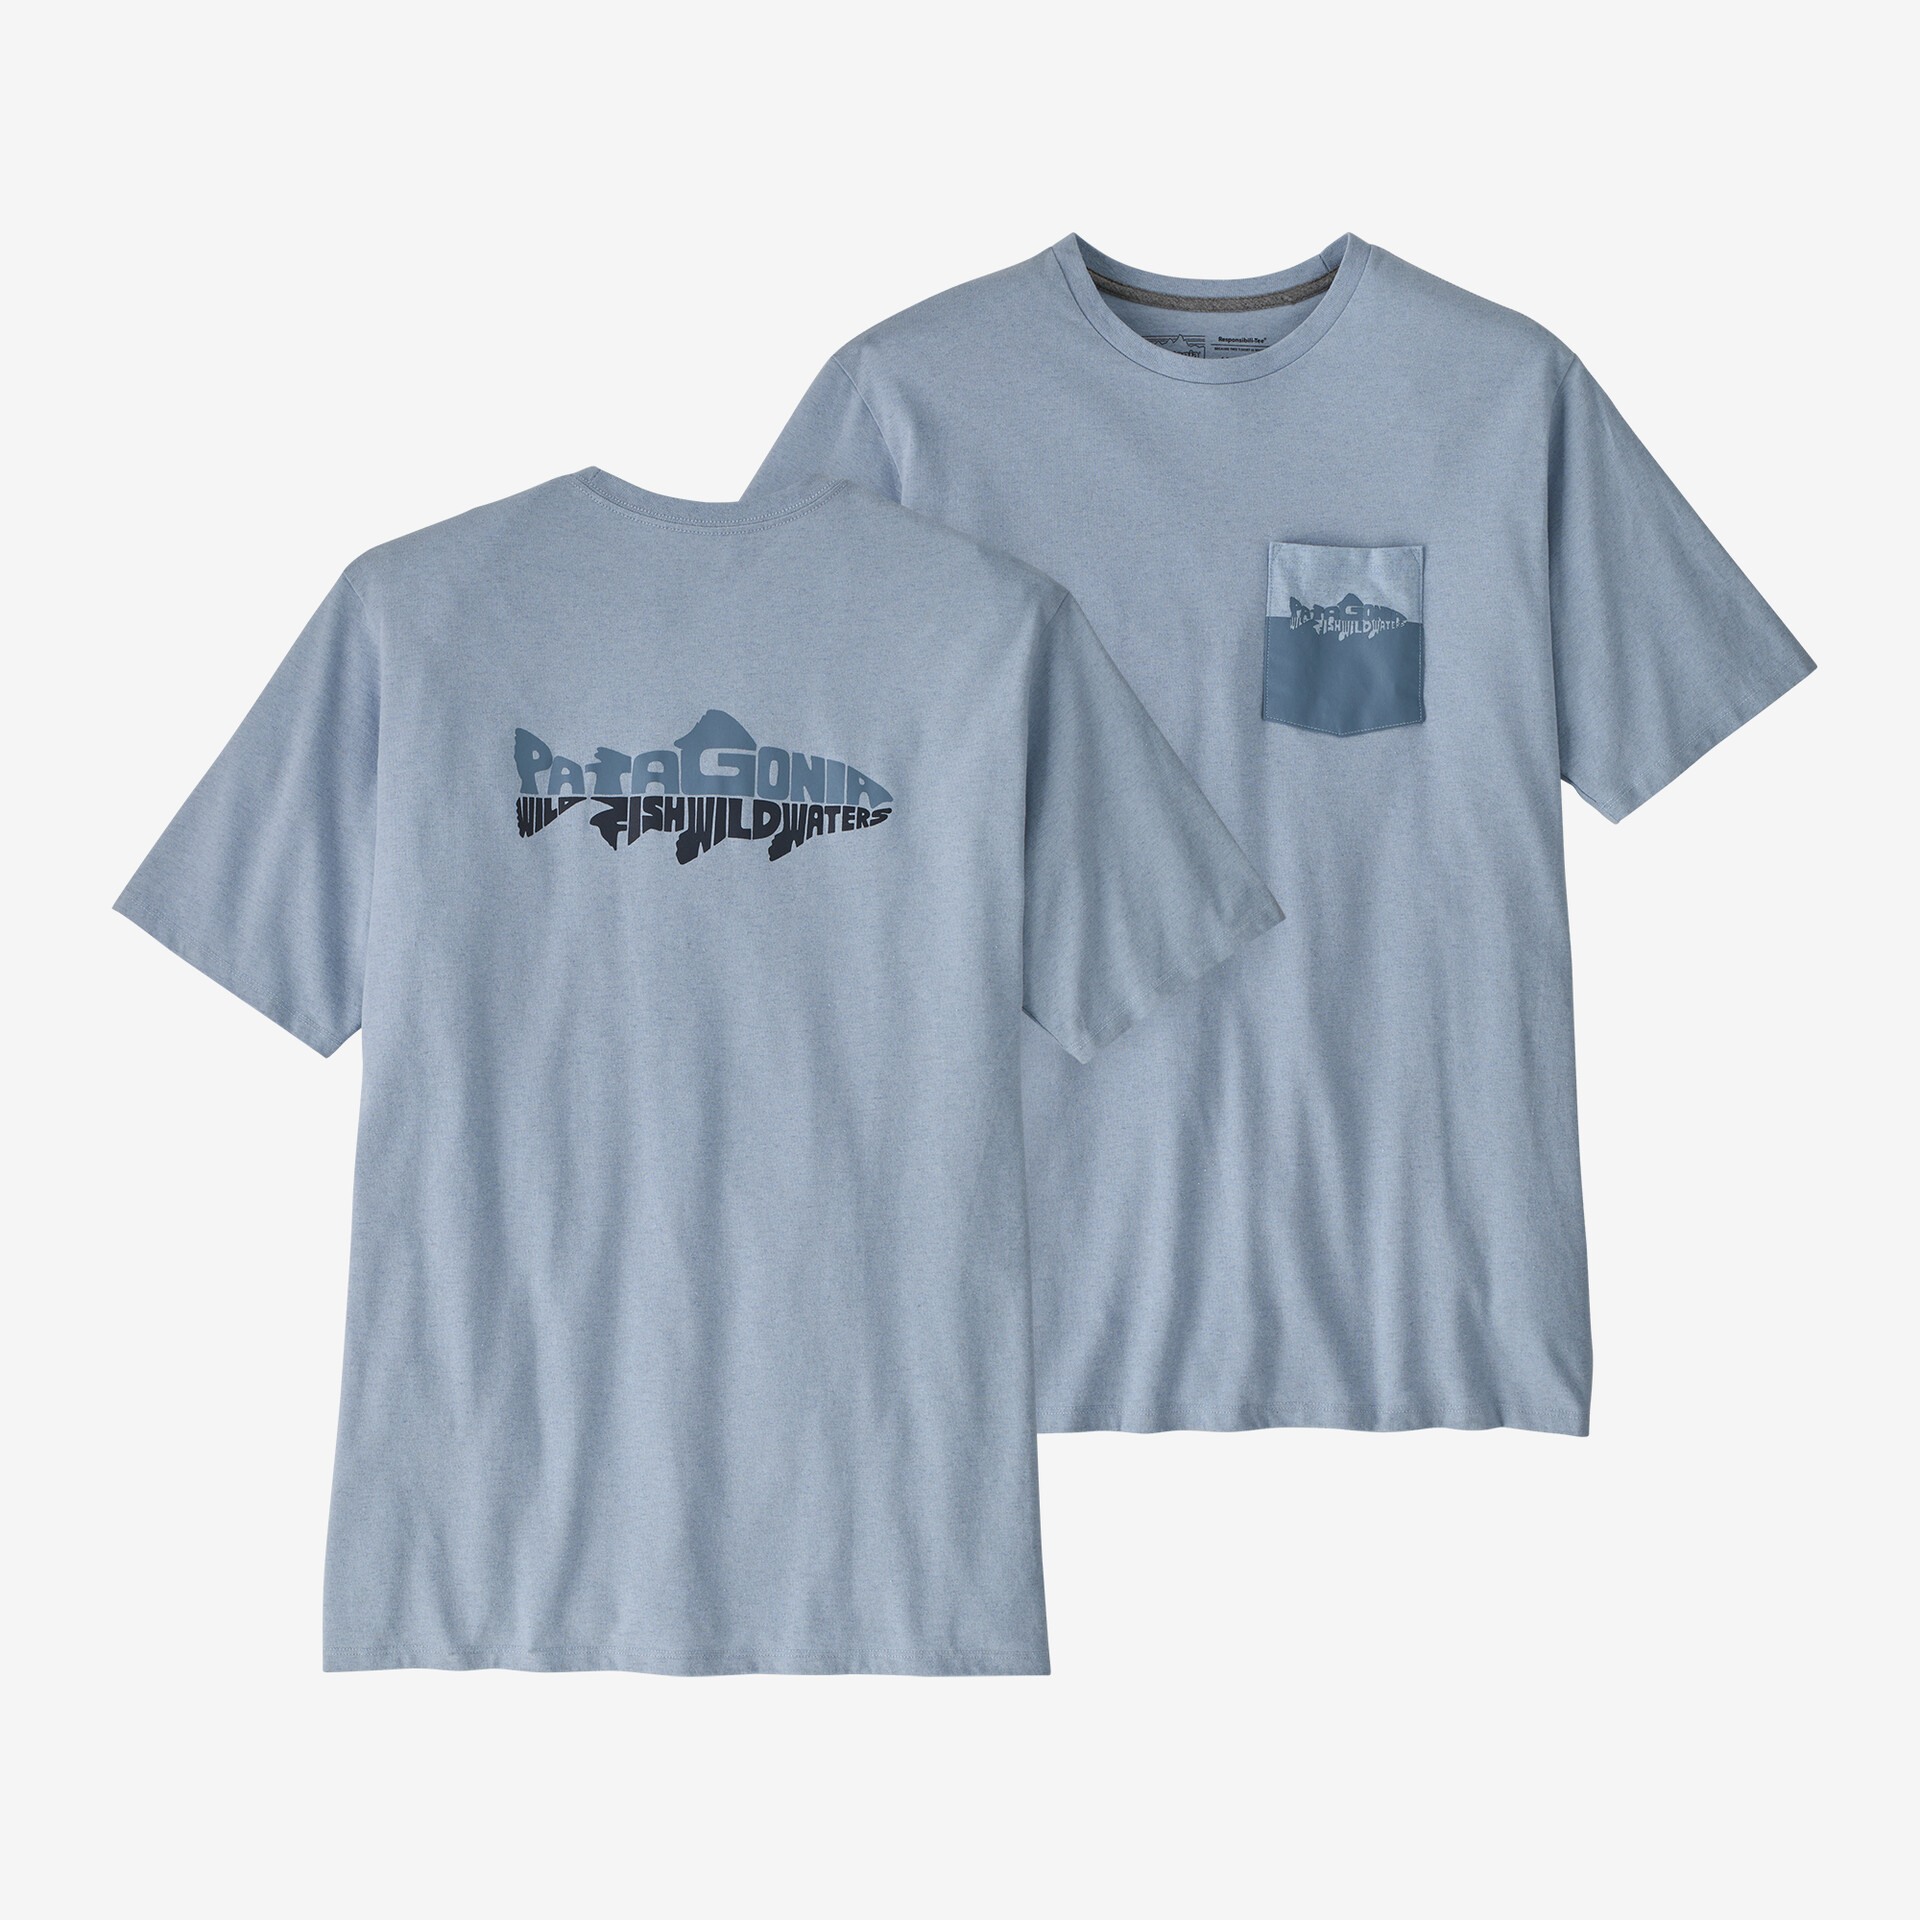 Мужская ответственная футболка с карманом Wild Waterline Patagonia, паровой синий мужская ответственная футболка с логотипом и карманом patagonia черный